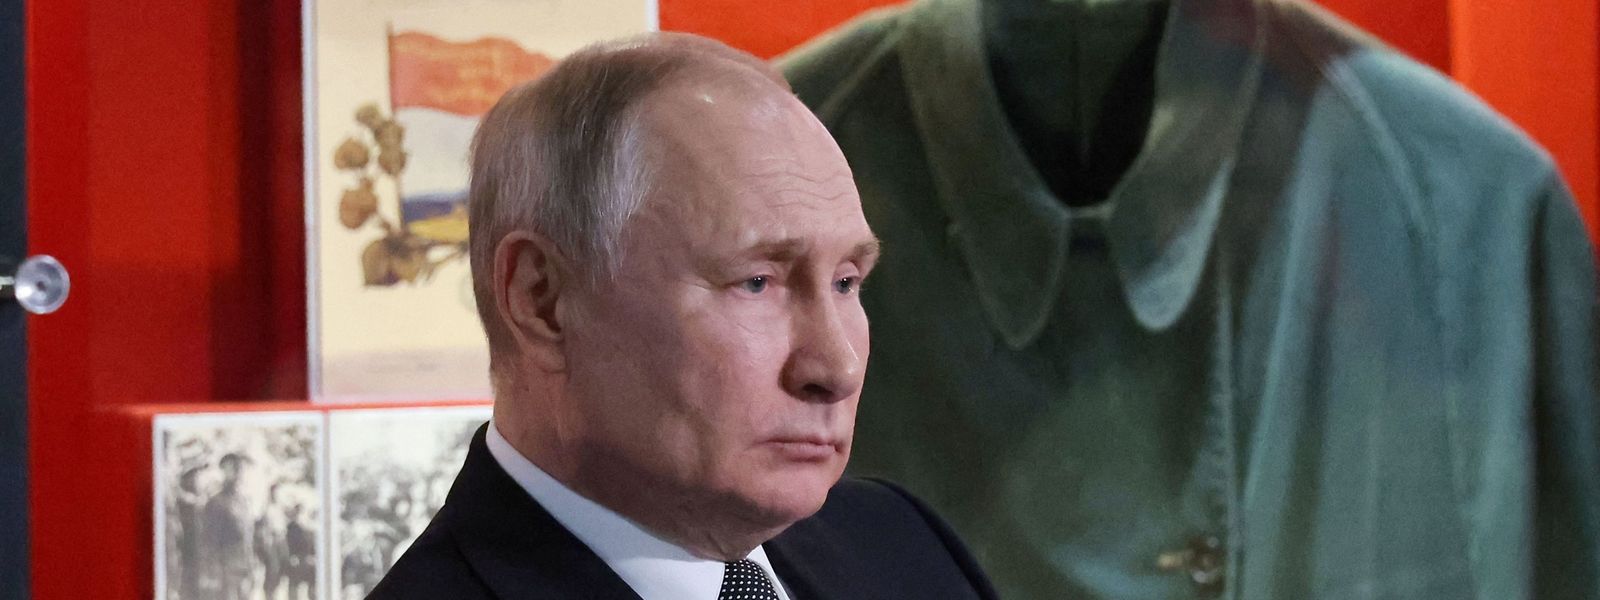 Detratores do regime dizem que Putin instrumentaliza a História para justificar a sua política